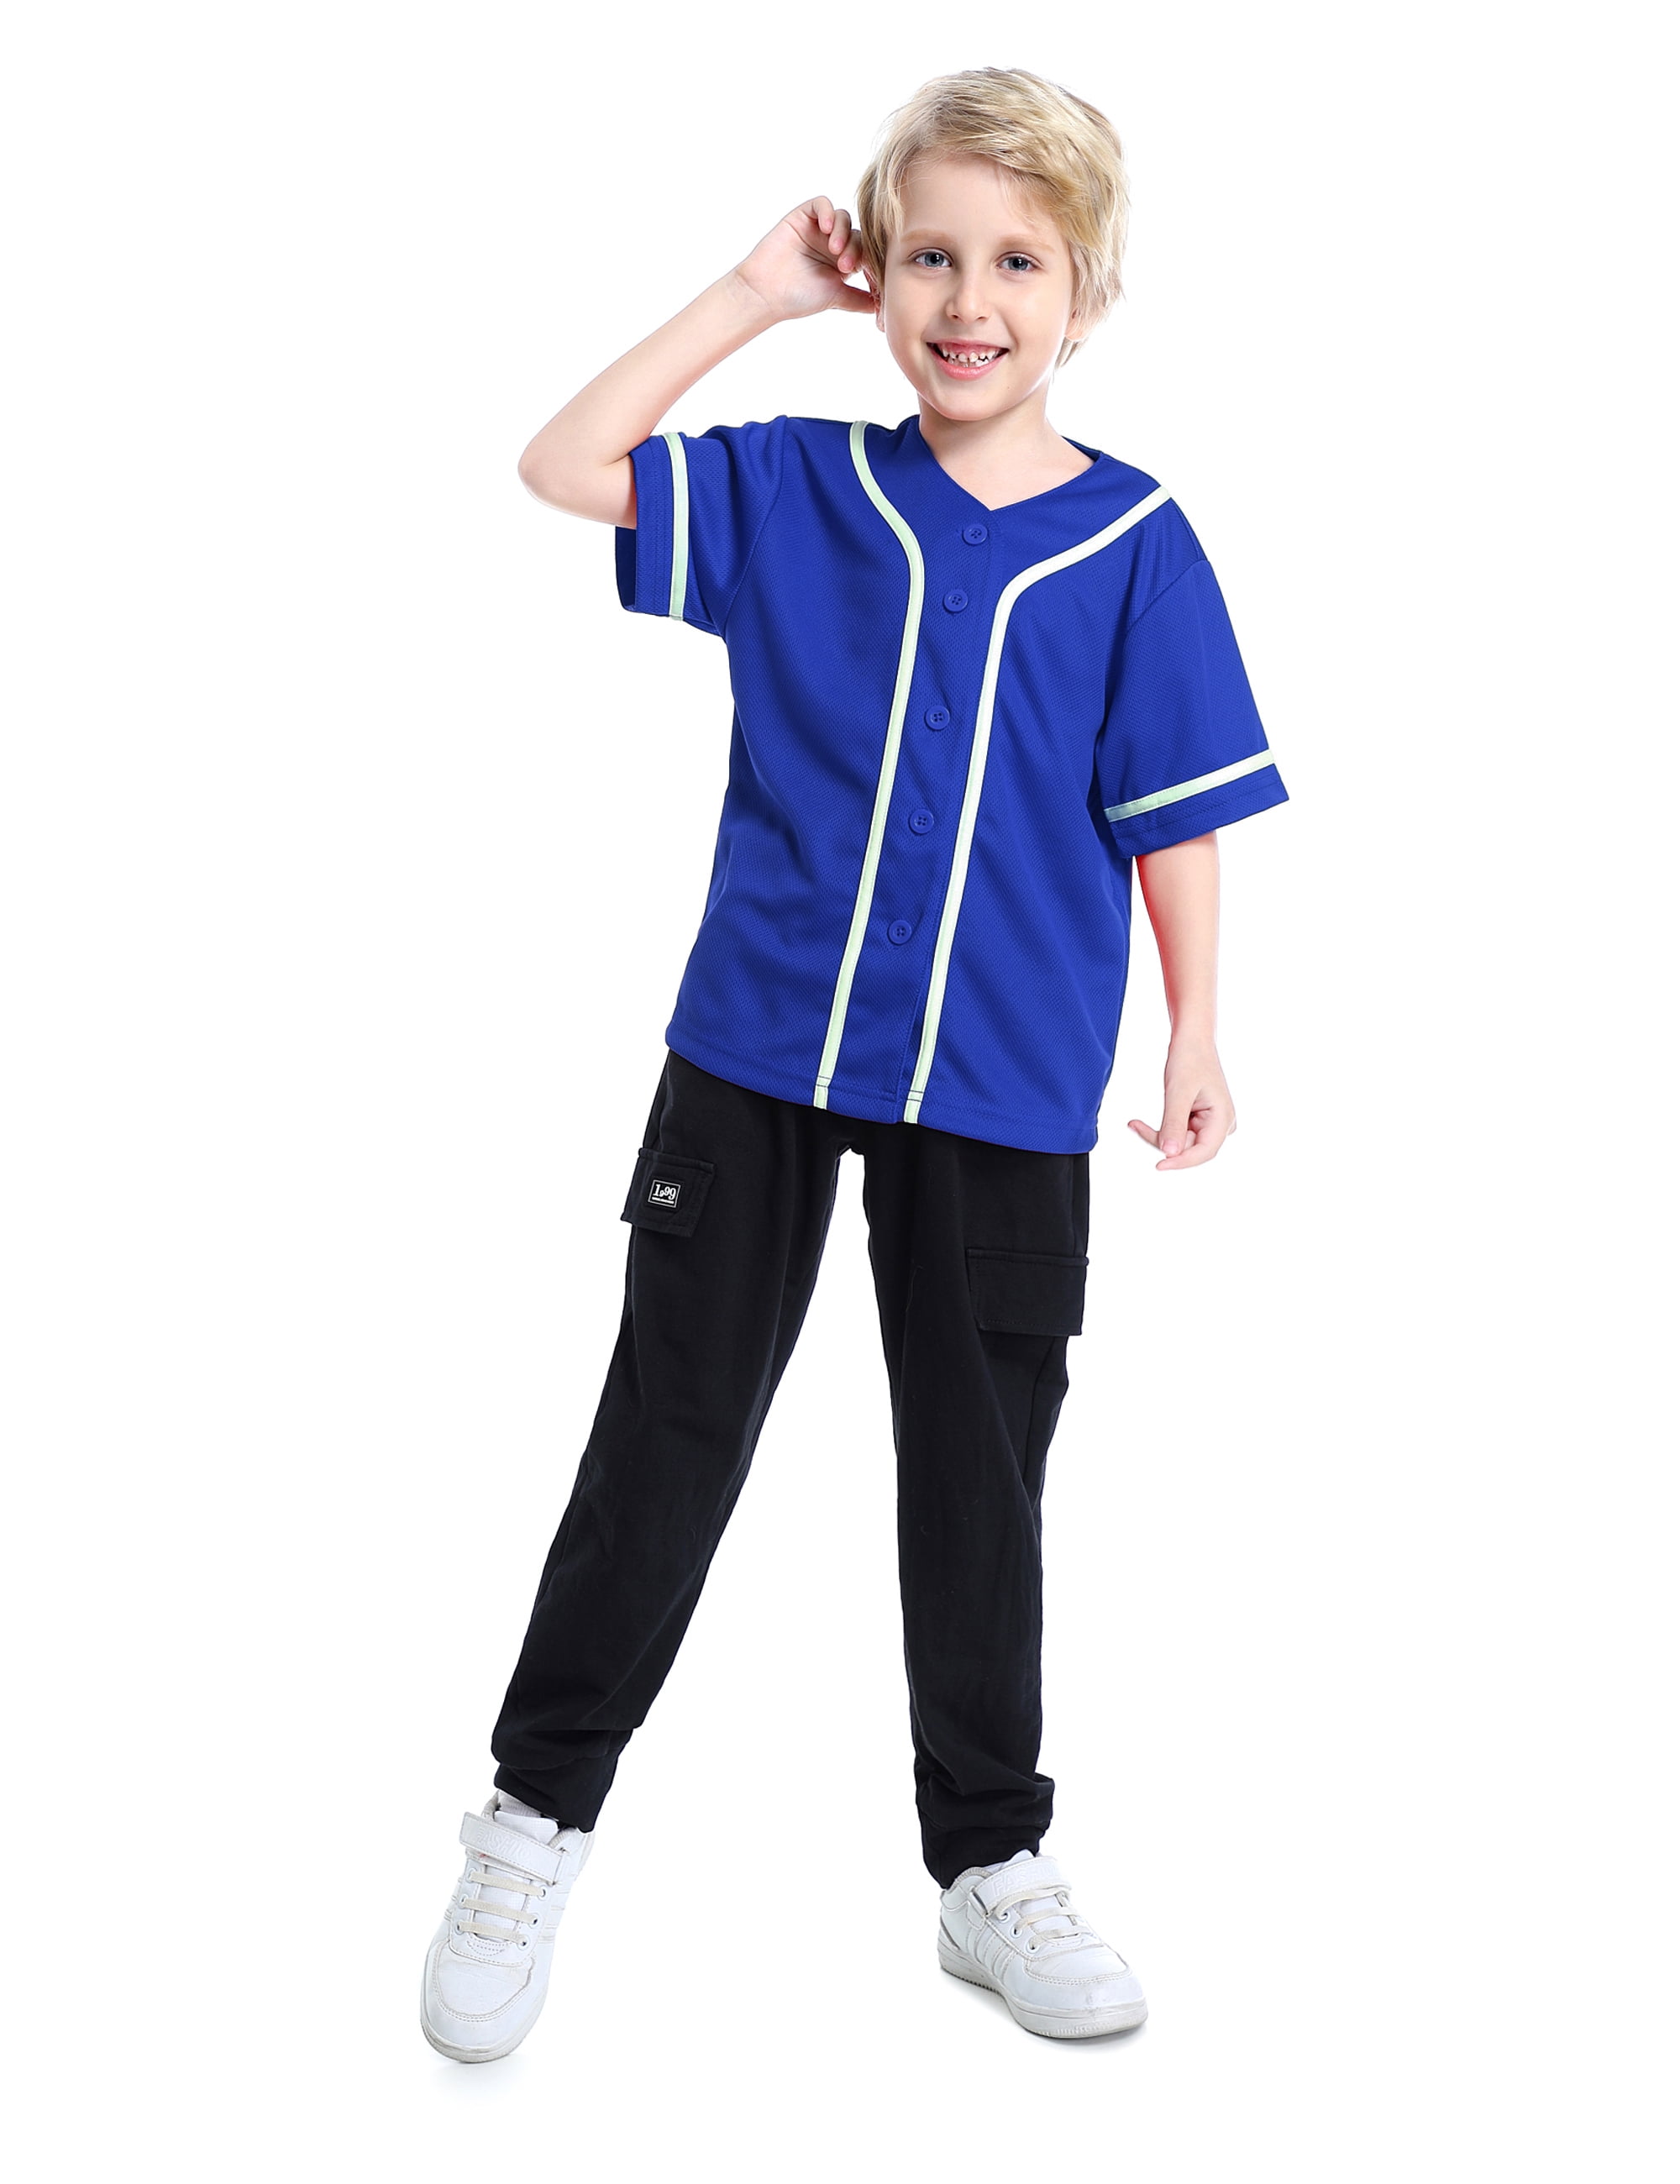 Kids Button Down Jersey T Shirt Softball TOPTIE Boys Baseball Jersey